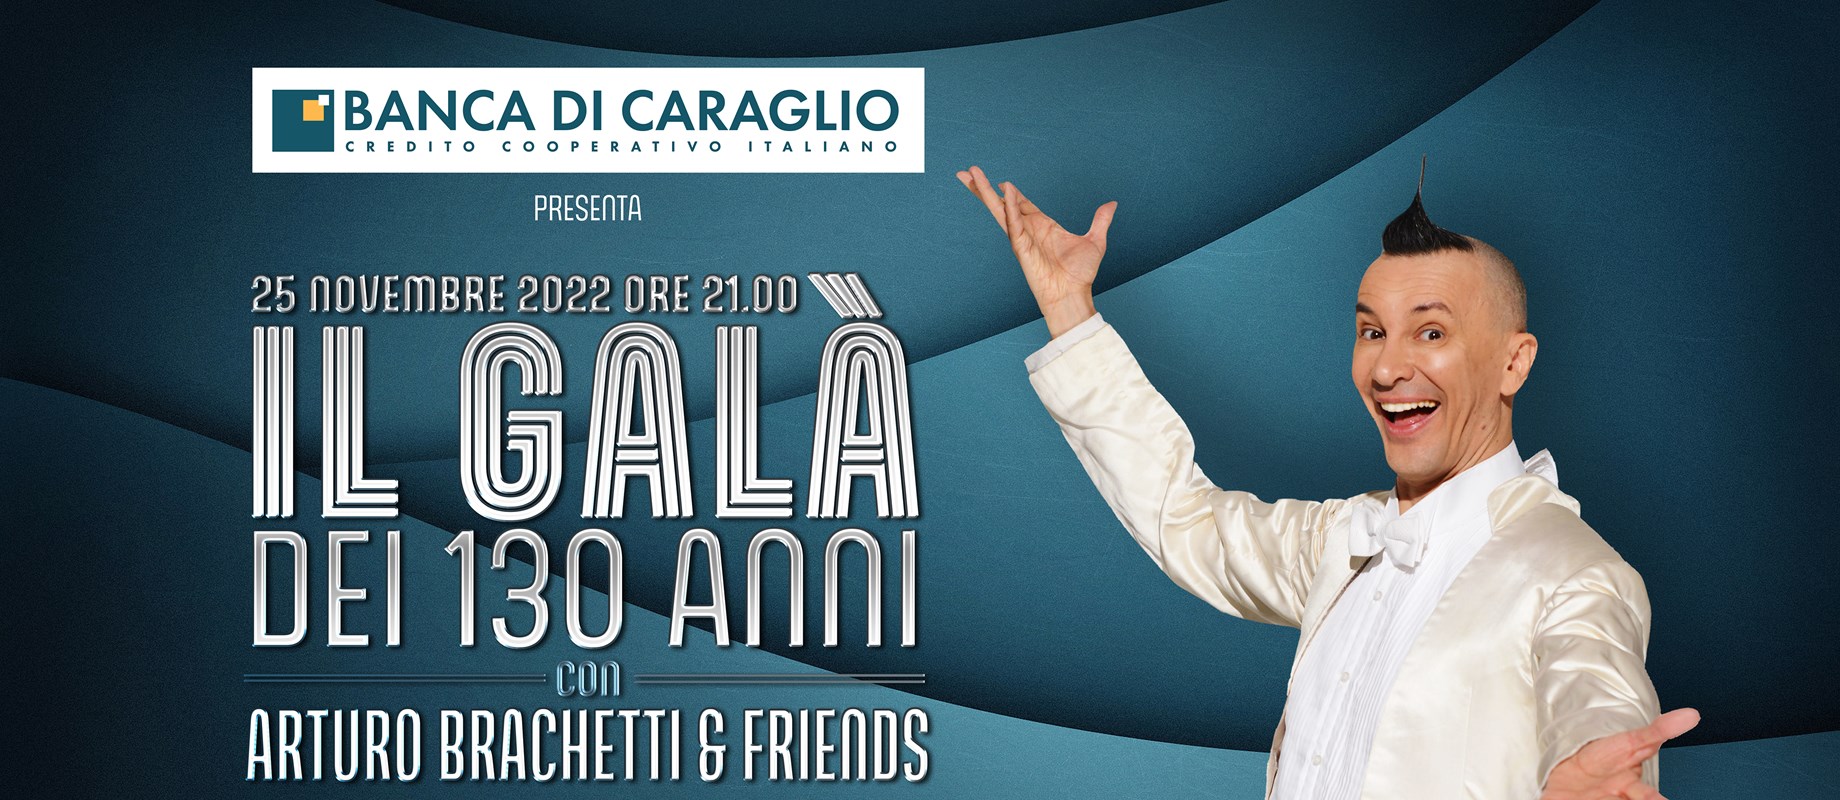 BIGLIETTI ESAURITI per “Il Galà dei 130 anni” , un incredibile show con Arturo Brachetti & Friends per festeggiare insieme questo importante compleanno! 